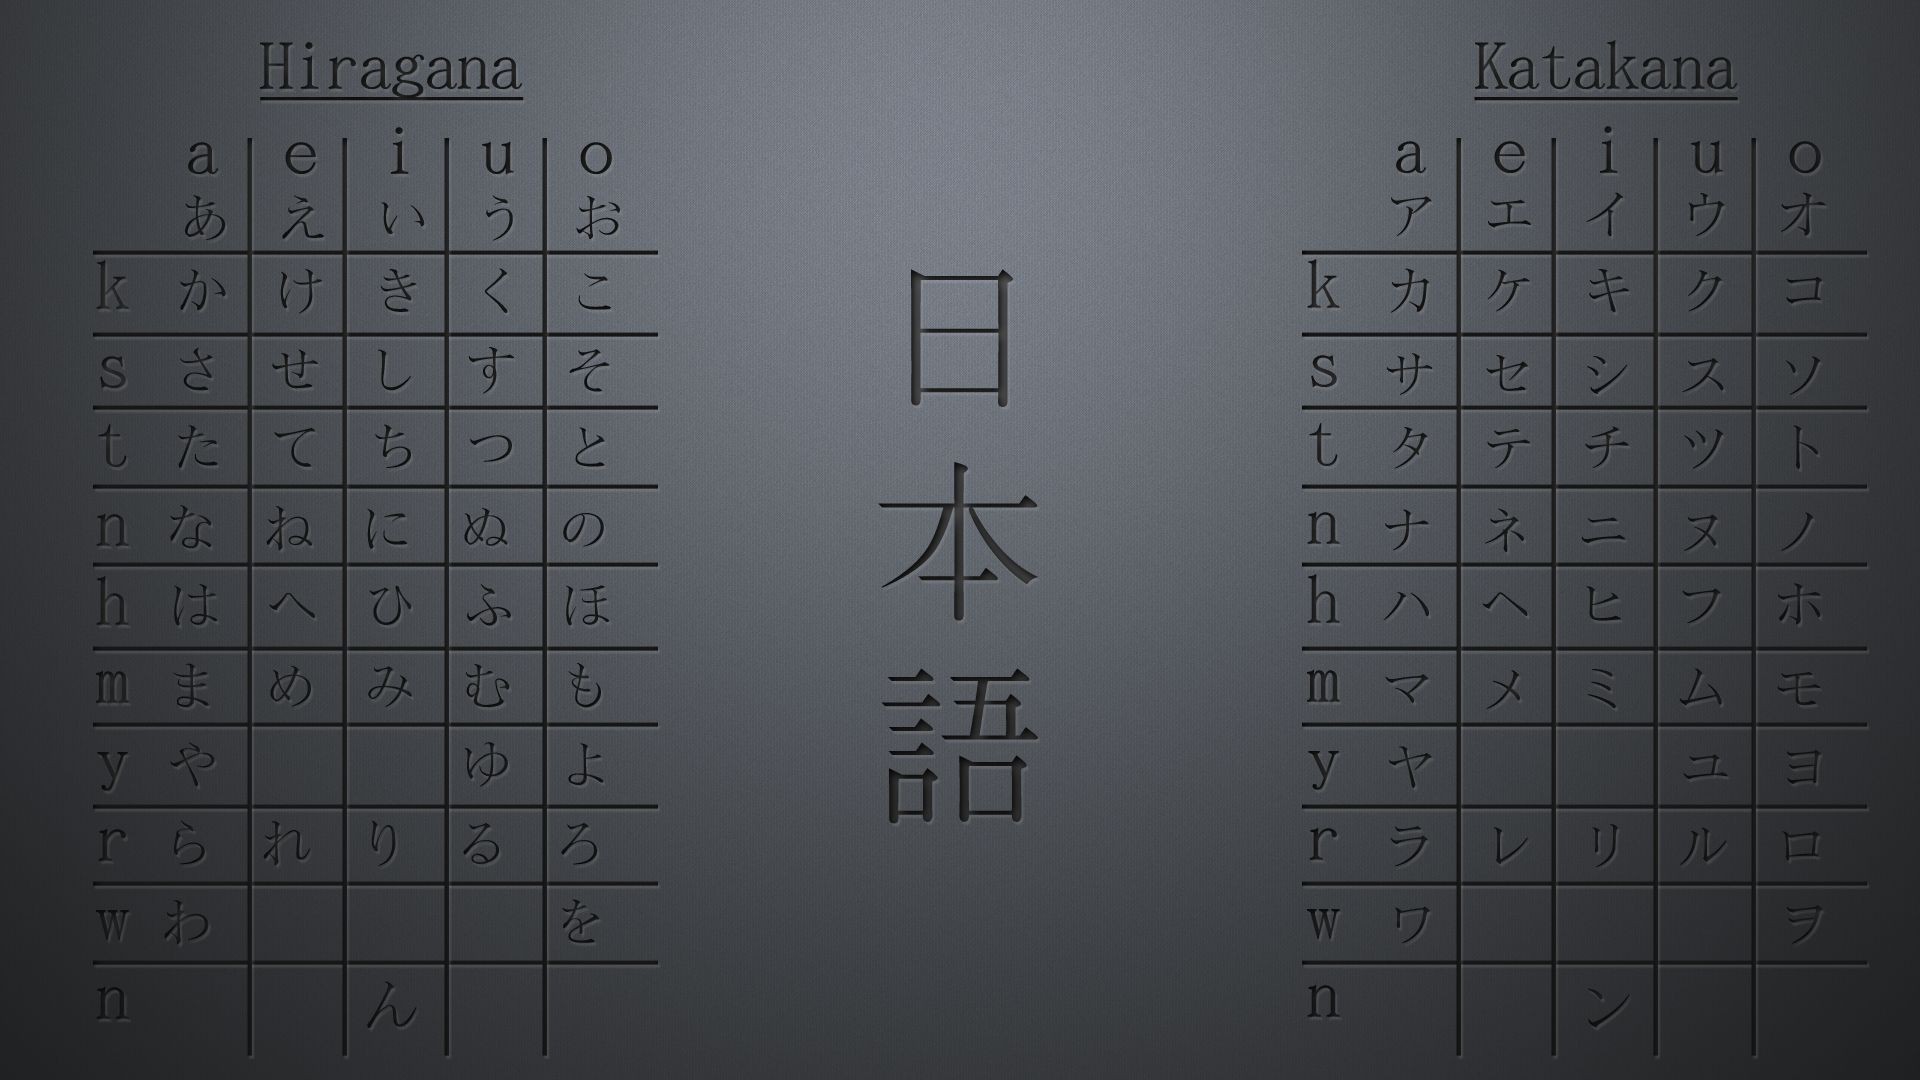 Table Hiragana Katakana 1920x1080